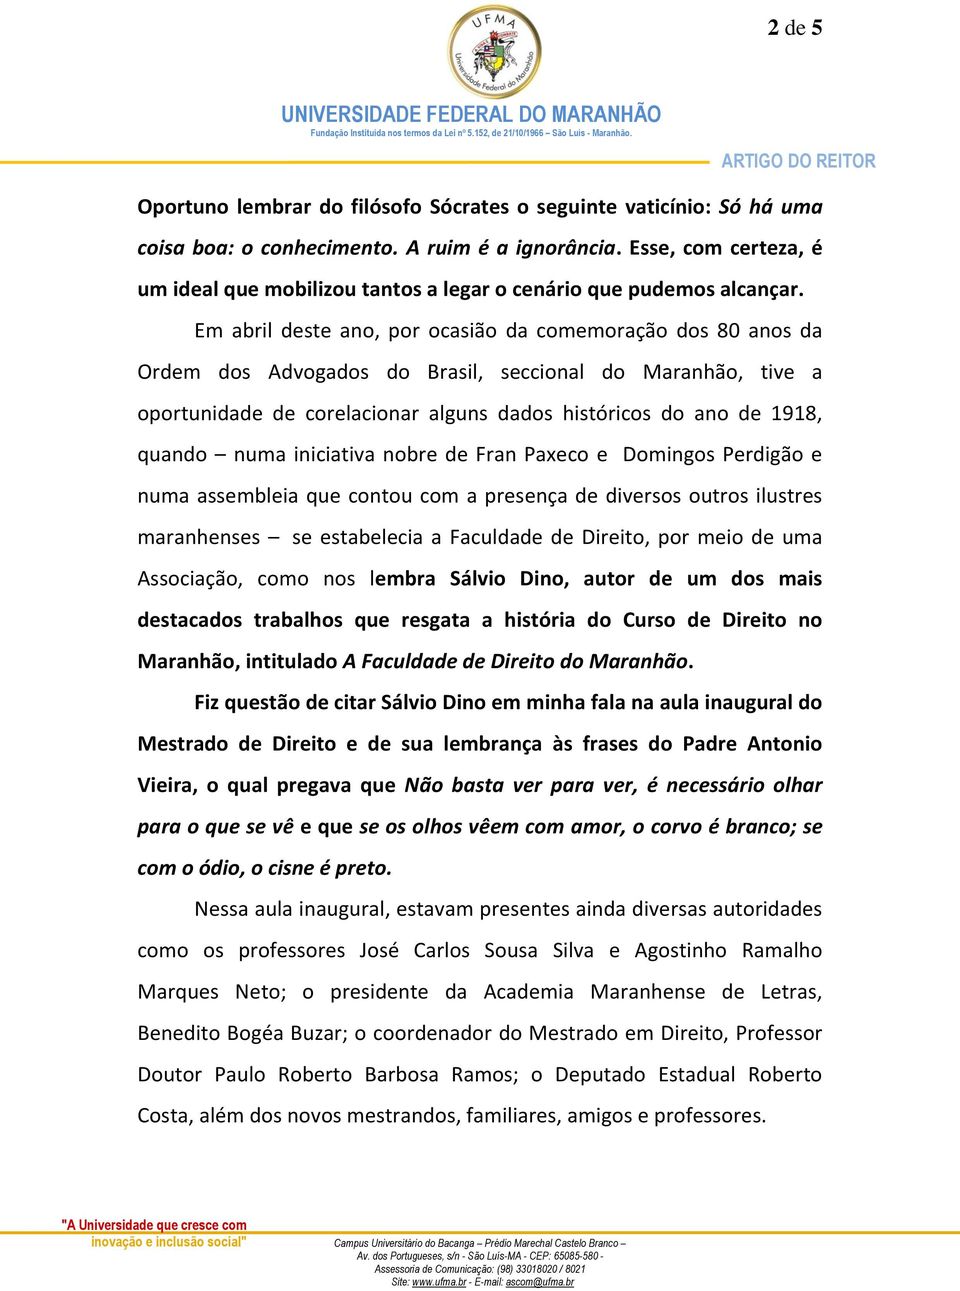 Em abril deste ano, por ocasião da comemoração dos 80 anos da Ordem dos Advogados do Brasil, seccional do Maranhão, tive a oportunidade de corelacionar alguns dados históricos do ano de 1918, quando